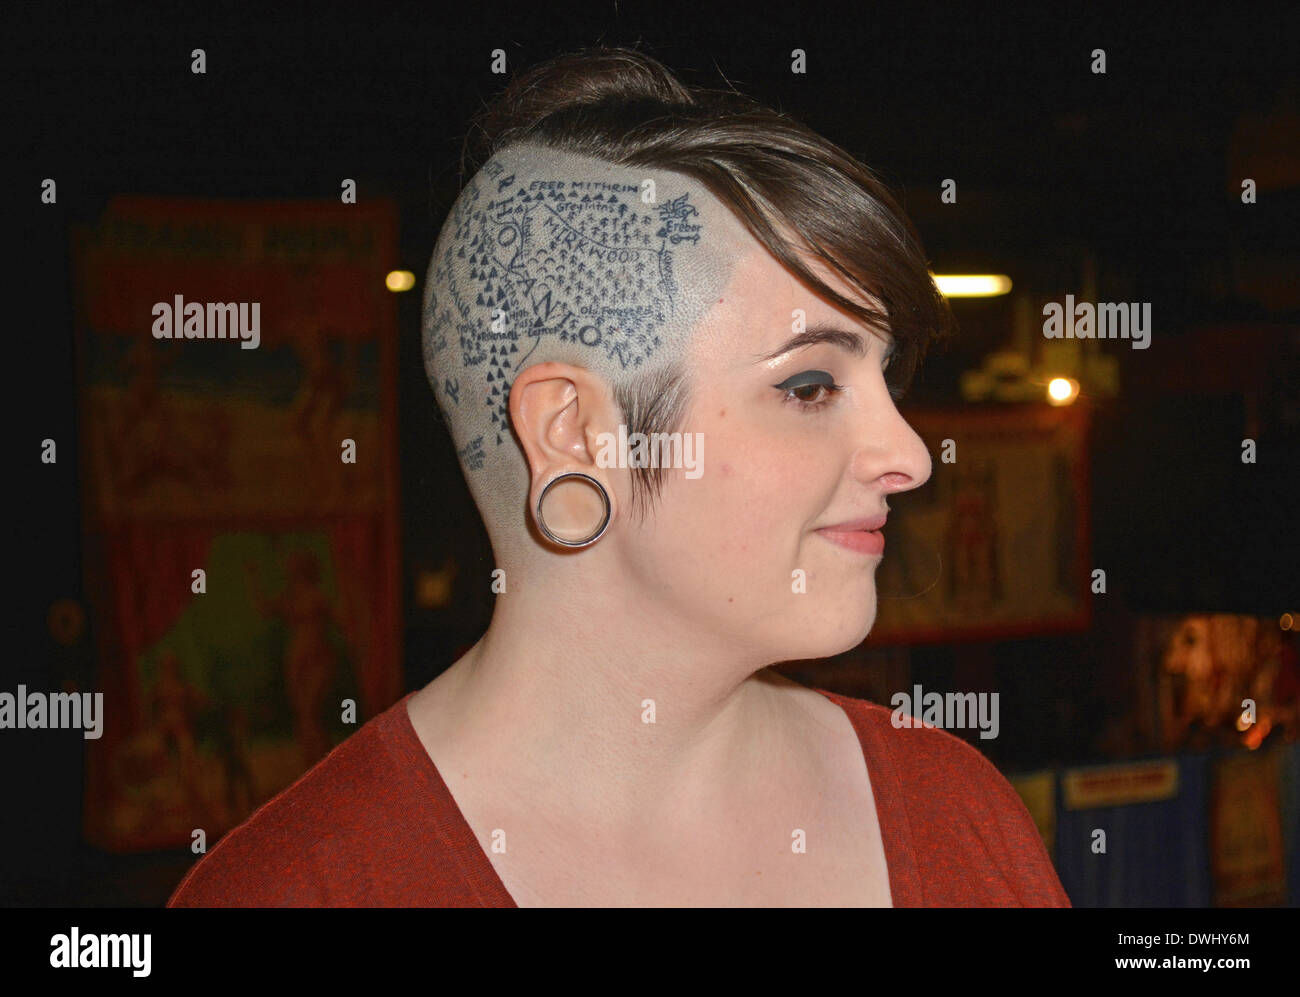 Ritratto di una donna con una testa parzialmente rasata e tatuaggi della  Terra di mezzo dal Signore degli anelli di Tolkien. Ad un convegno sul  tatuaggio a Manhattan, NY Foto stock -